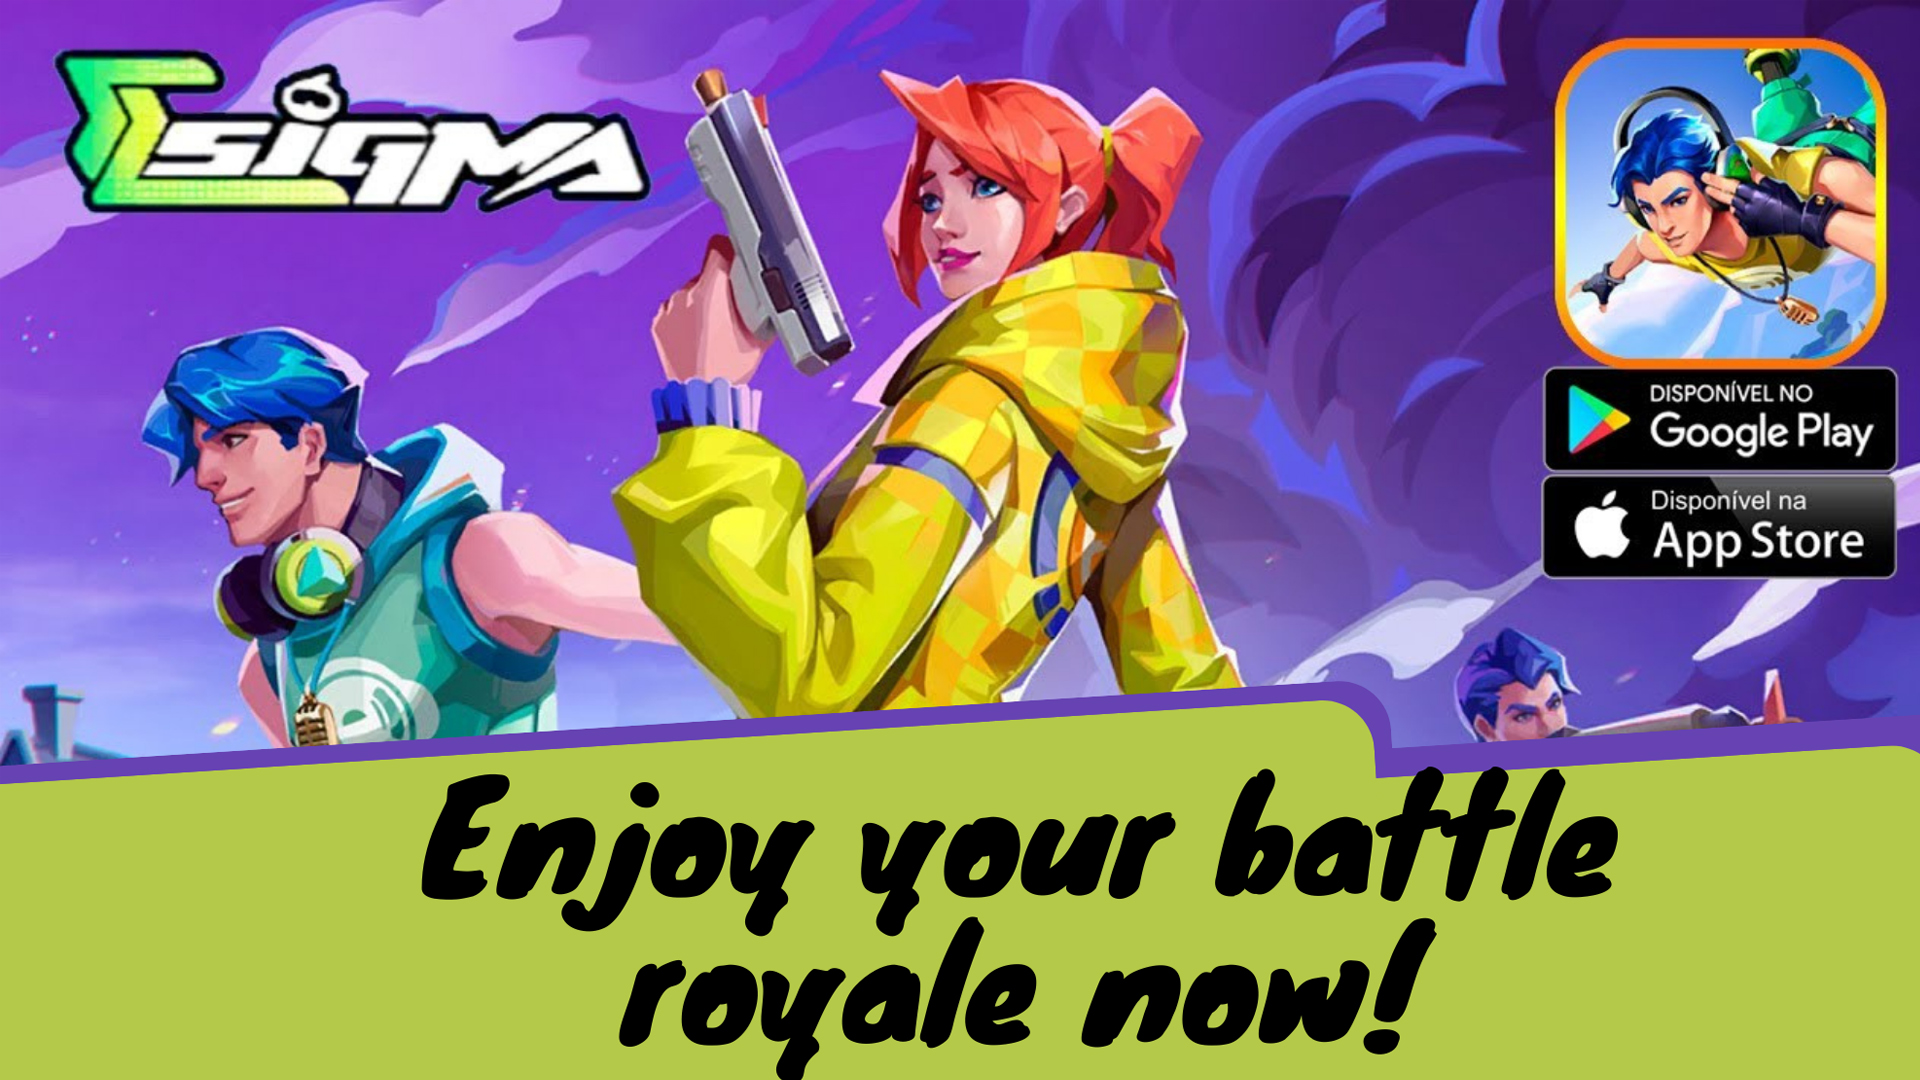 Game Sigma Battle Royale Play Store Apakah Sudah Tersedia? Simak Jawabannya DISINI! Ada Link Downloadnya Juga